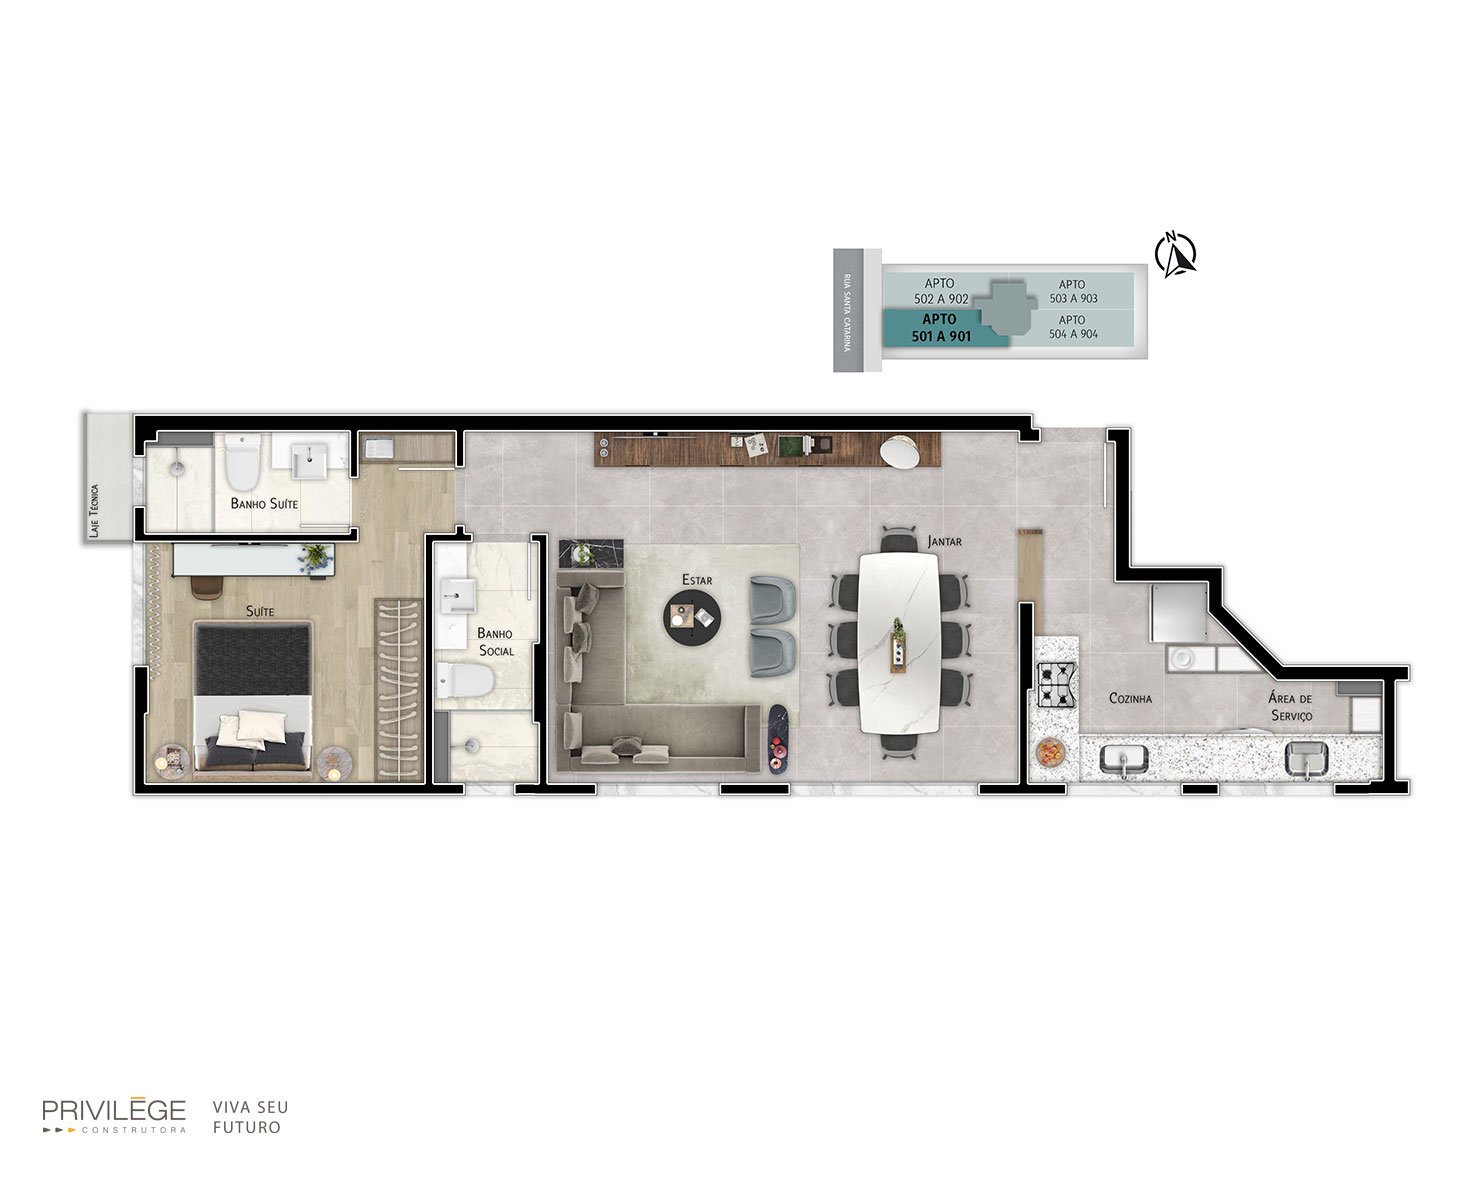 Apartamento studio 2 quartos – 501 a 901